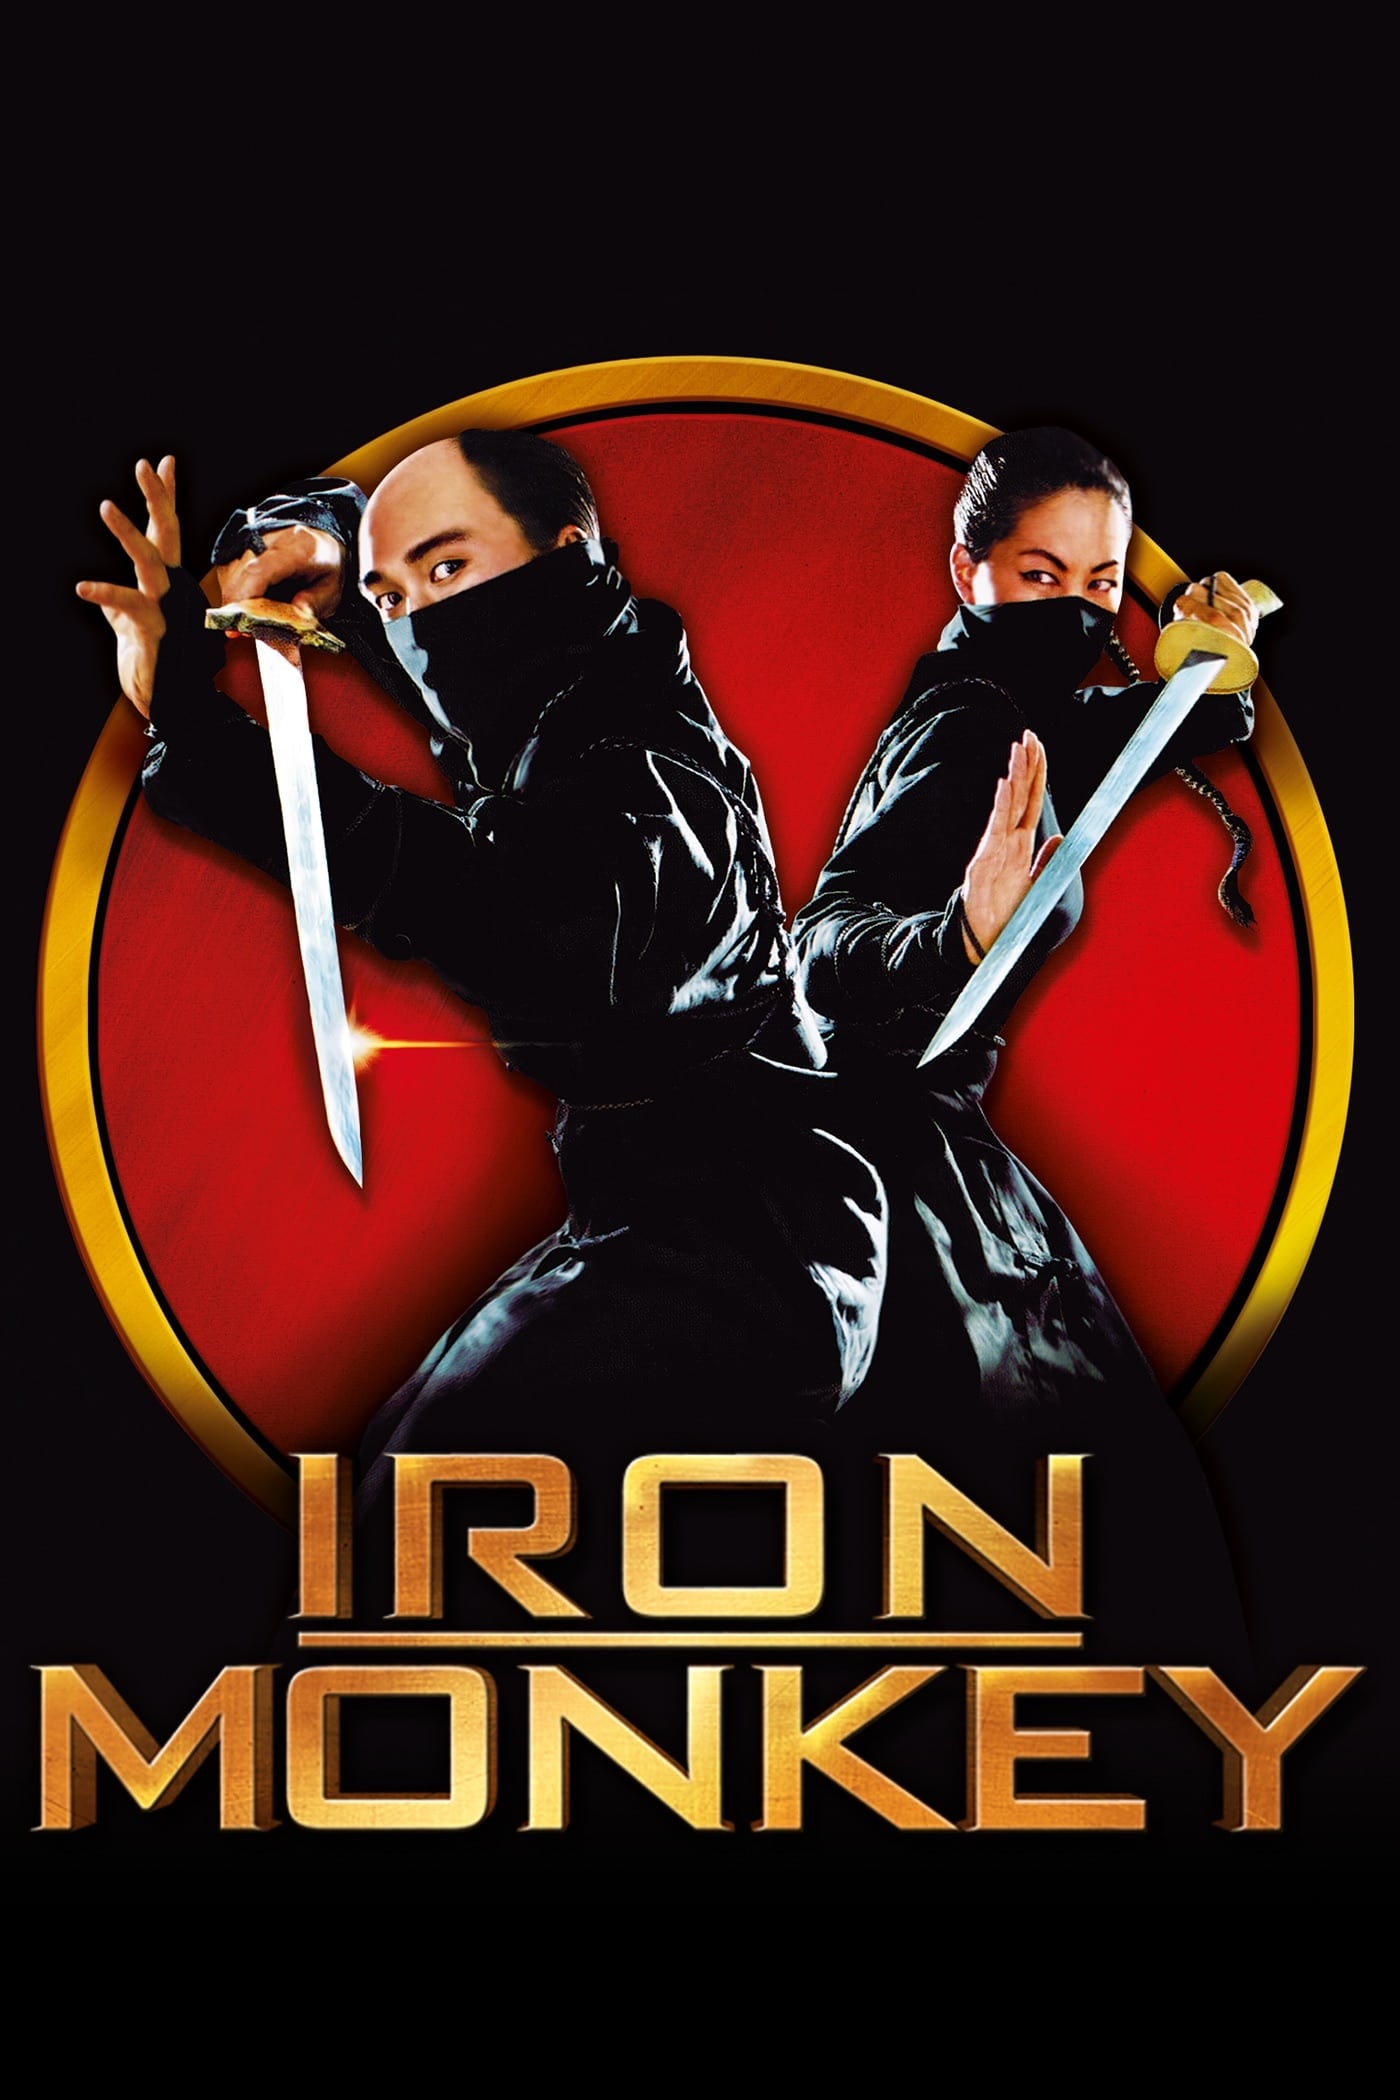 El Mono de Hierro (Iron Monkey) (1993)